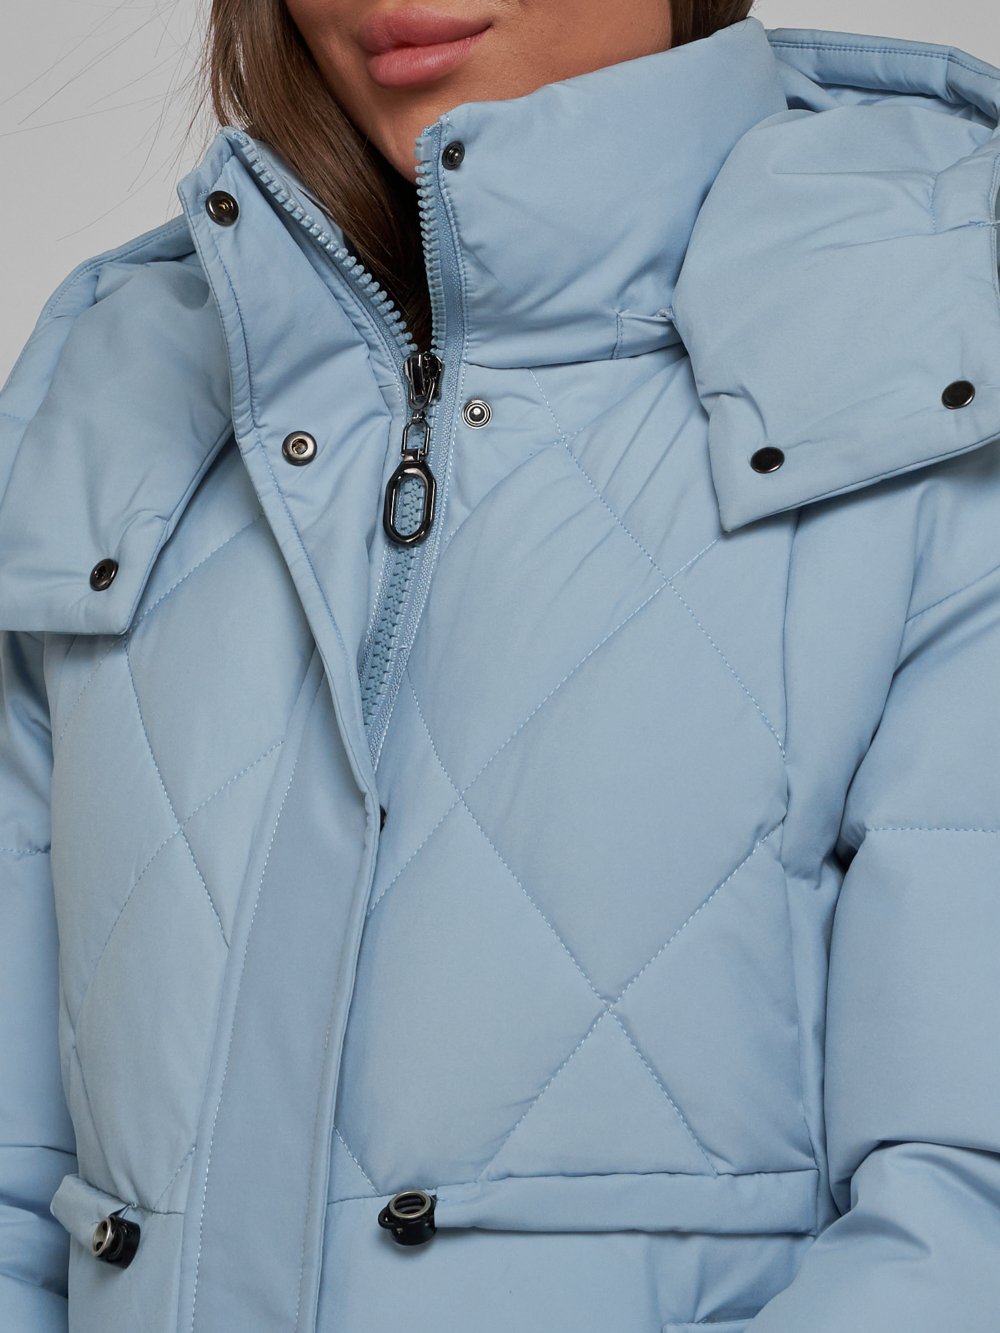 Купить куртку зимнюю оптом от производителя недорого в Москве 52302Gl 1